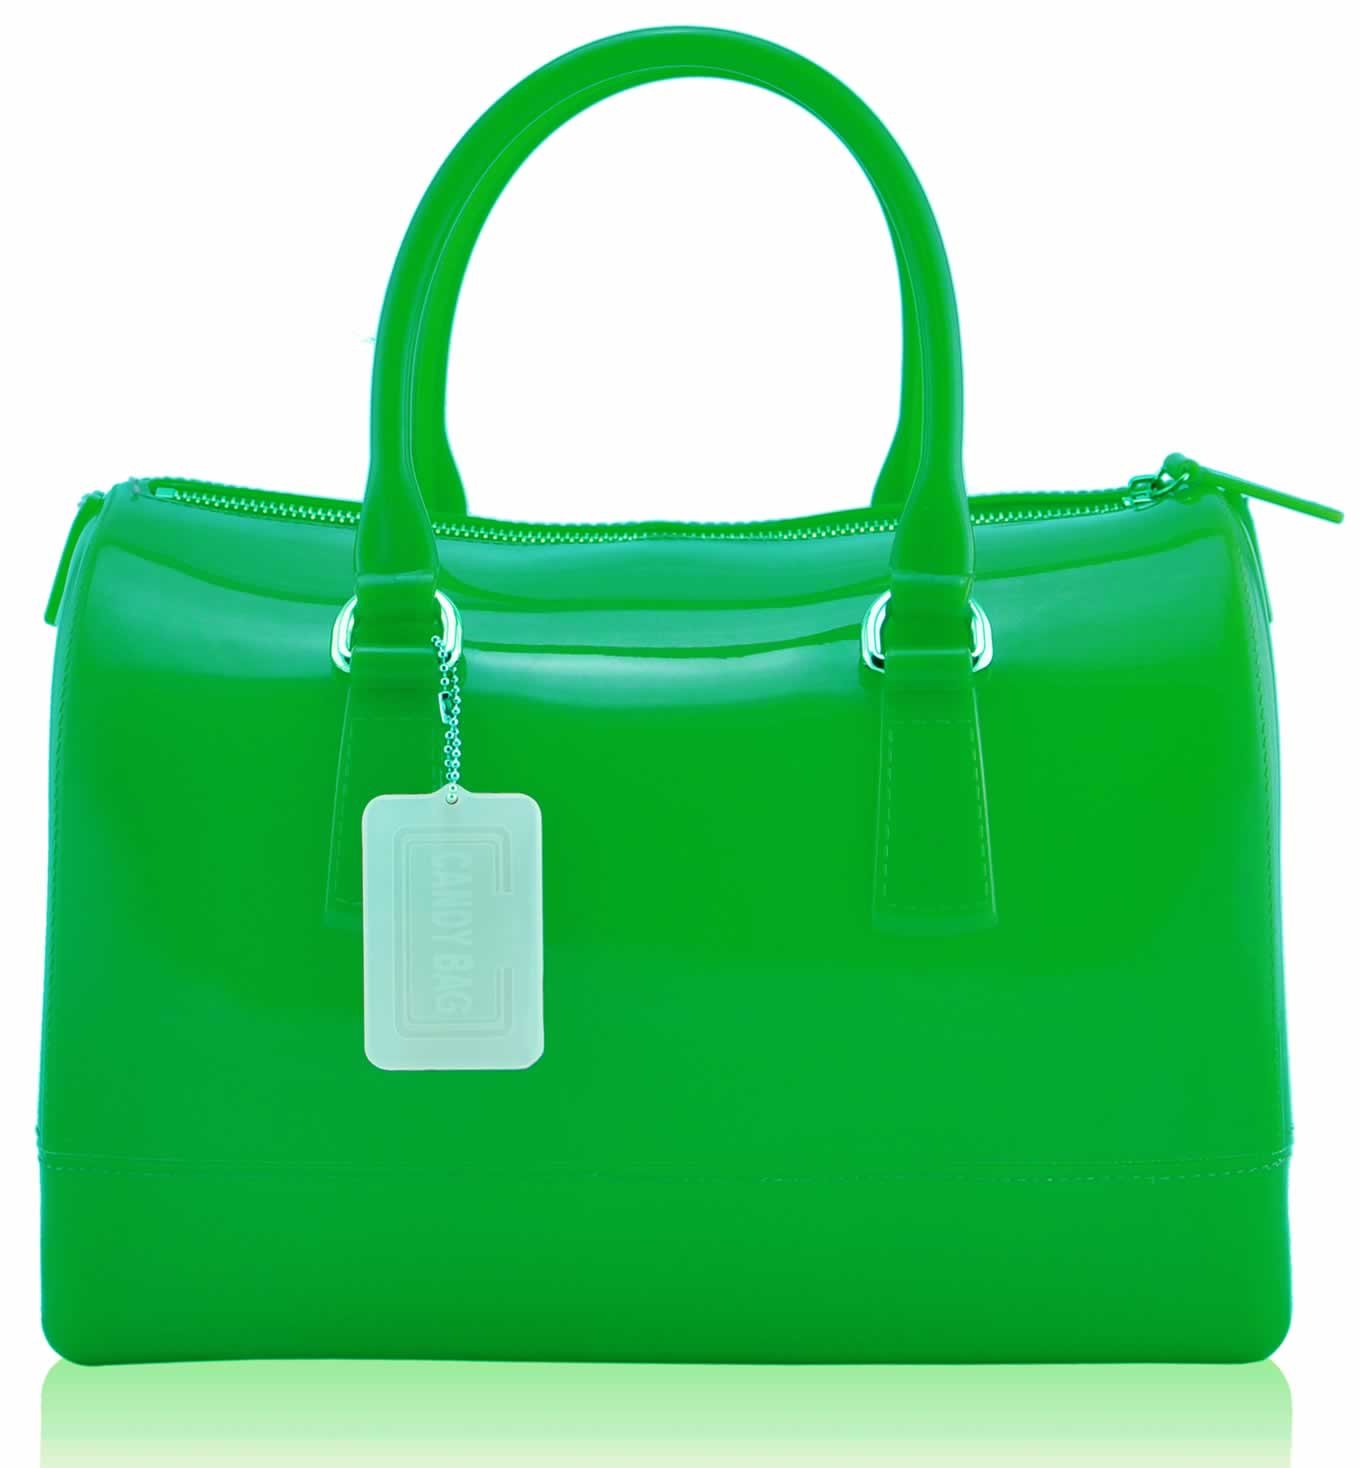 Satchel Bags :: LS0062A- Green Grab Handbag - Ladies handbags, clutch ...